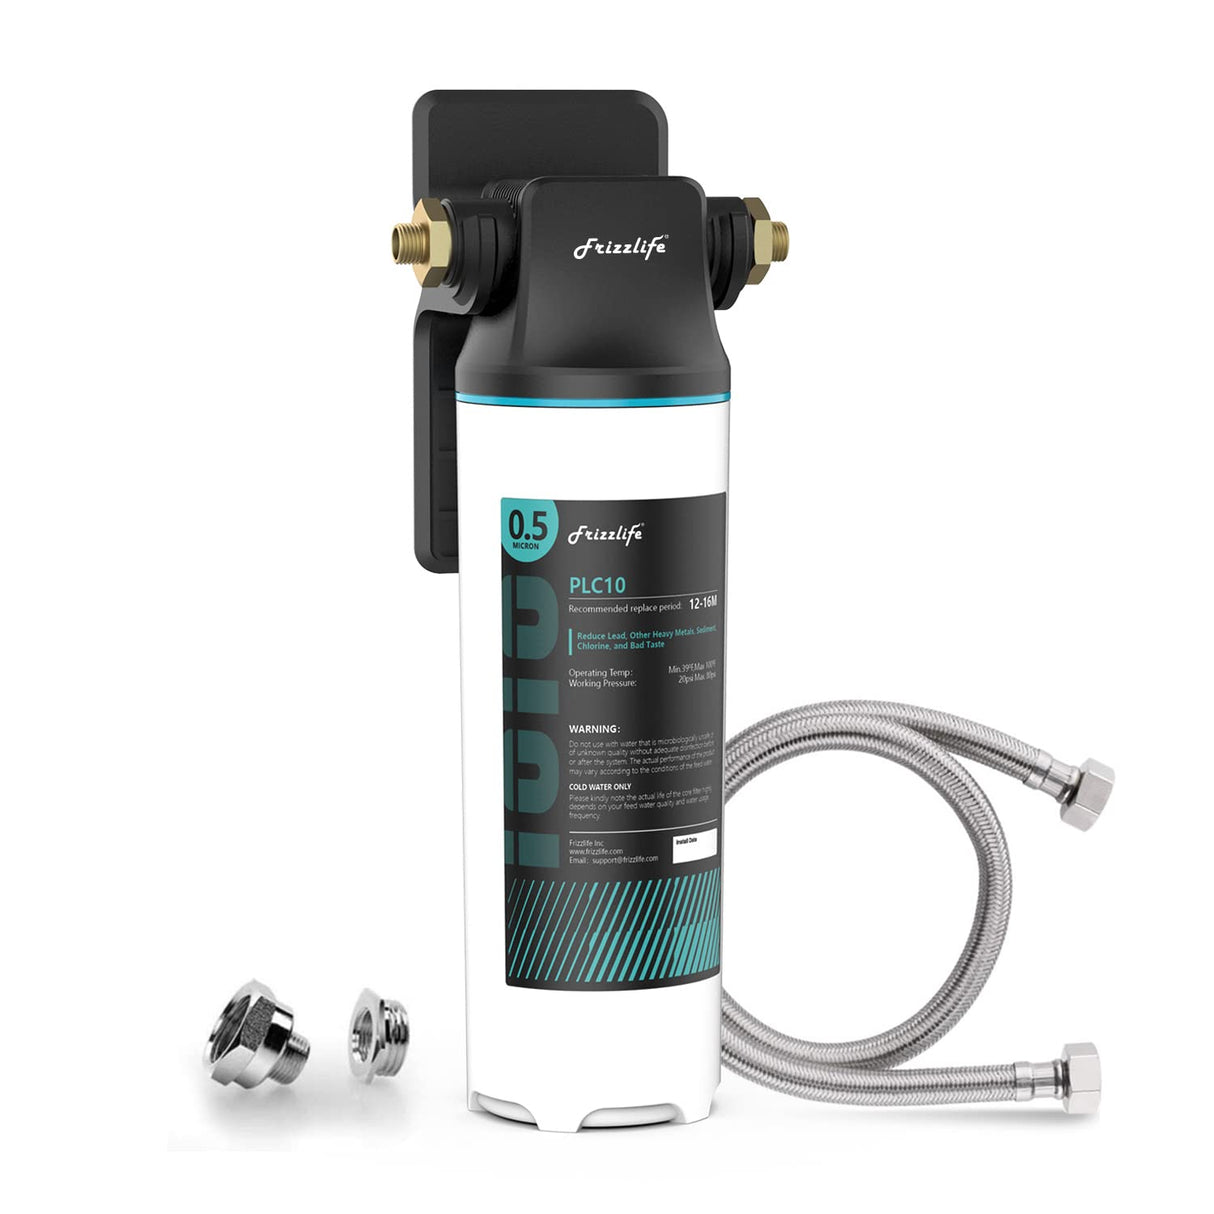 Sistema de filtro de agua Frizzlife SW10 de conexión directa debajo del fregadero, reduce el 99,99% de plomo, cloro, mal sabor y olor